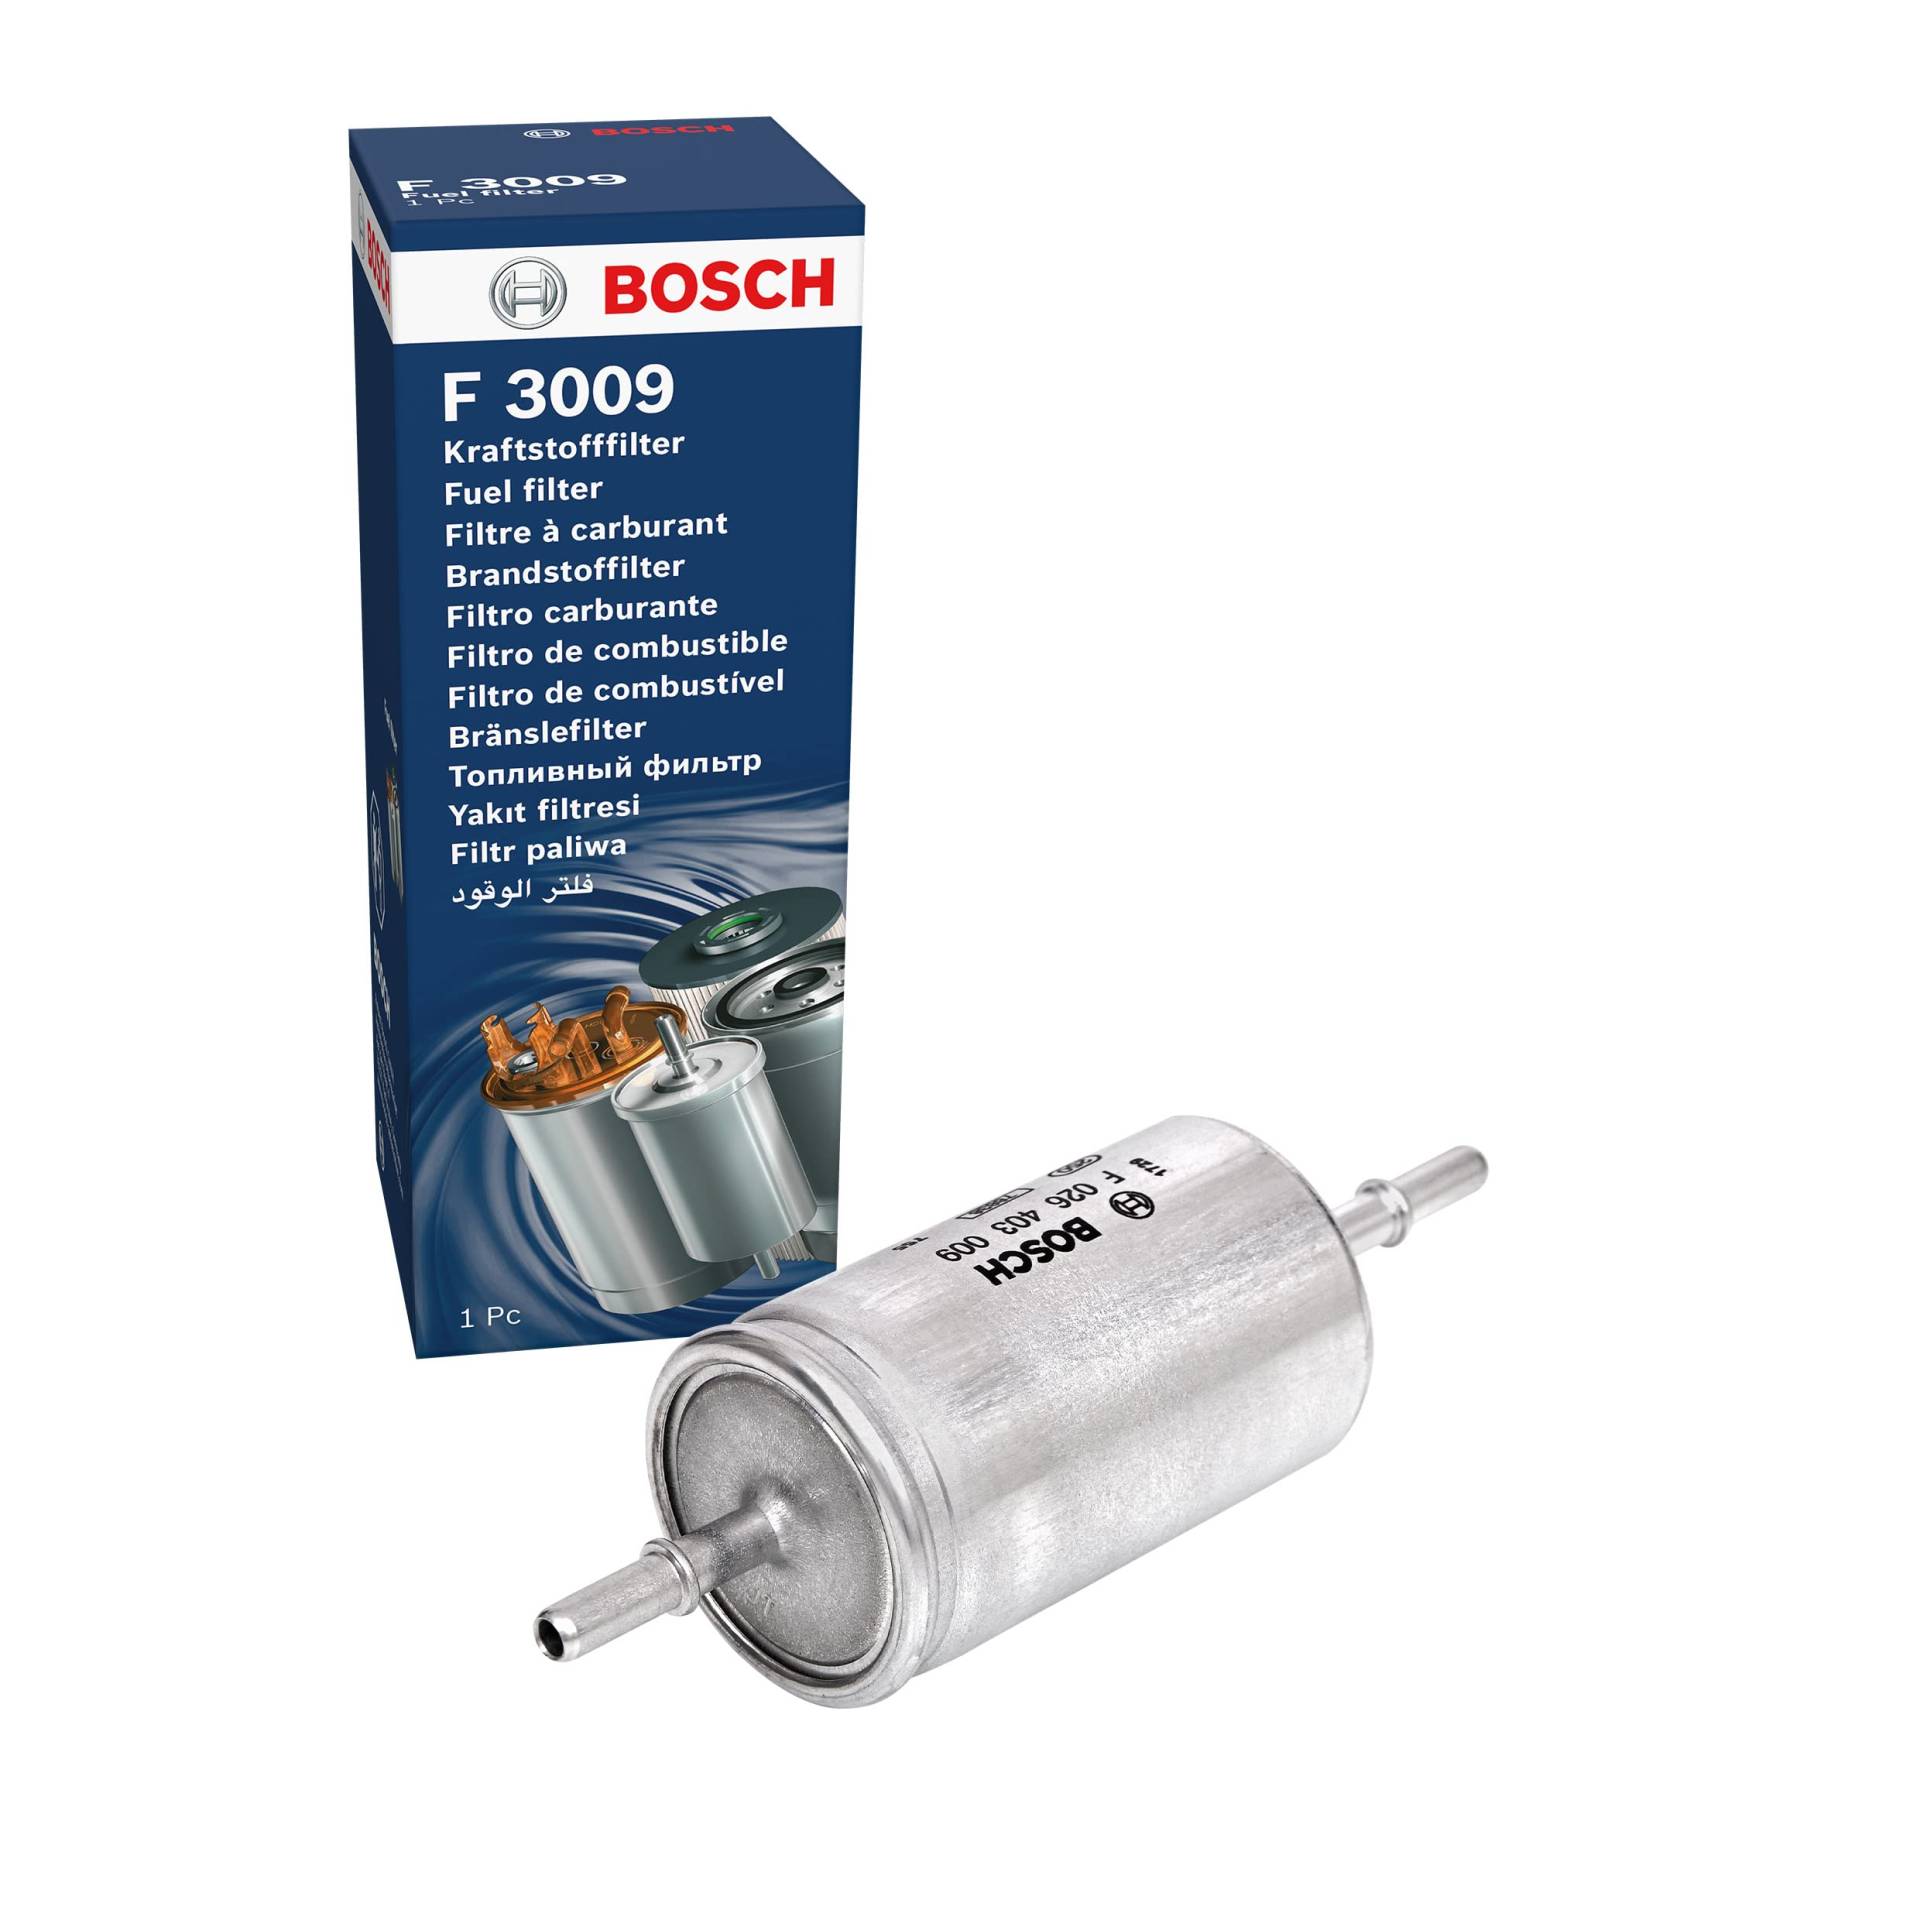 Bosch F3009 - Benzinfilter Auto von Bosch Automotive